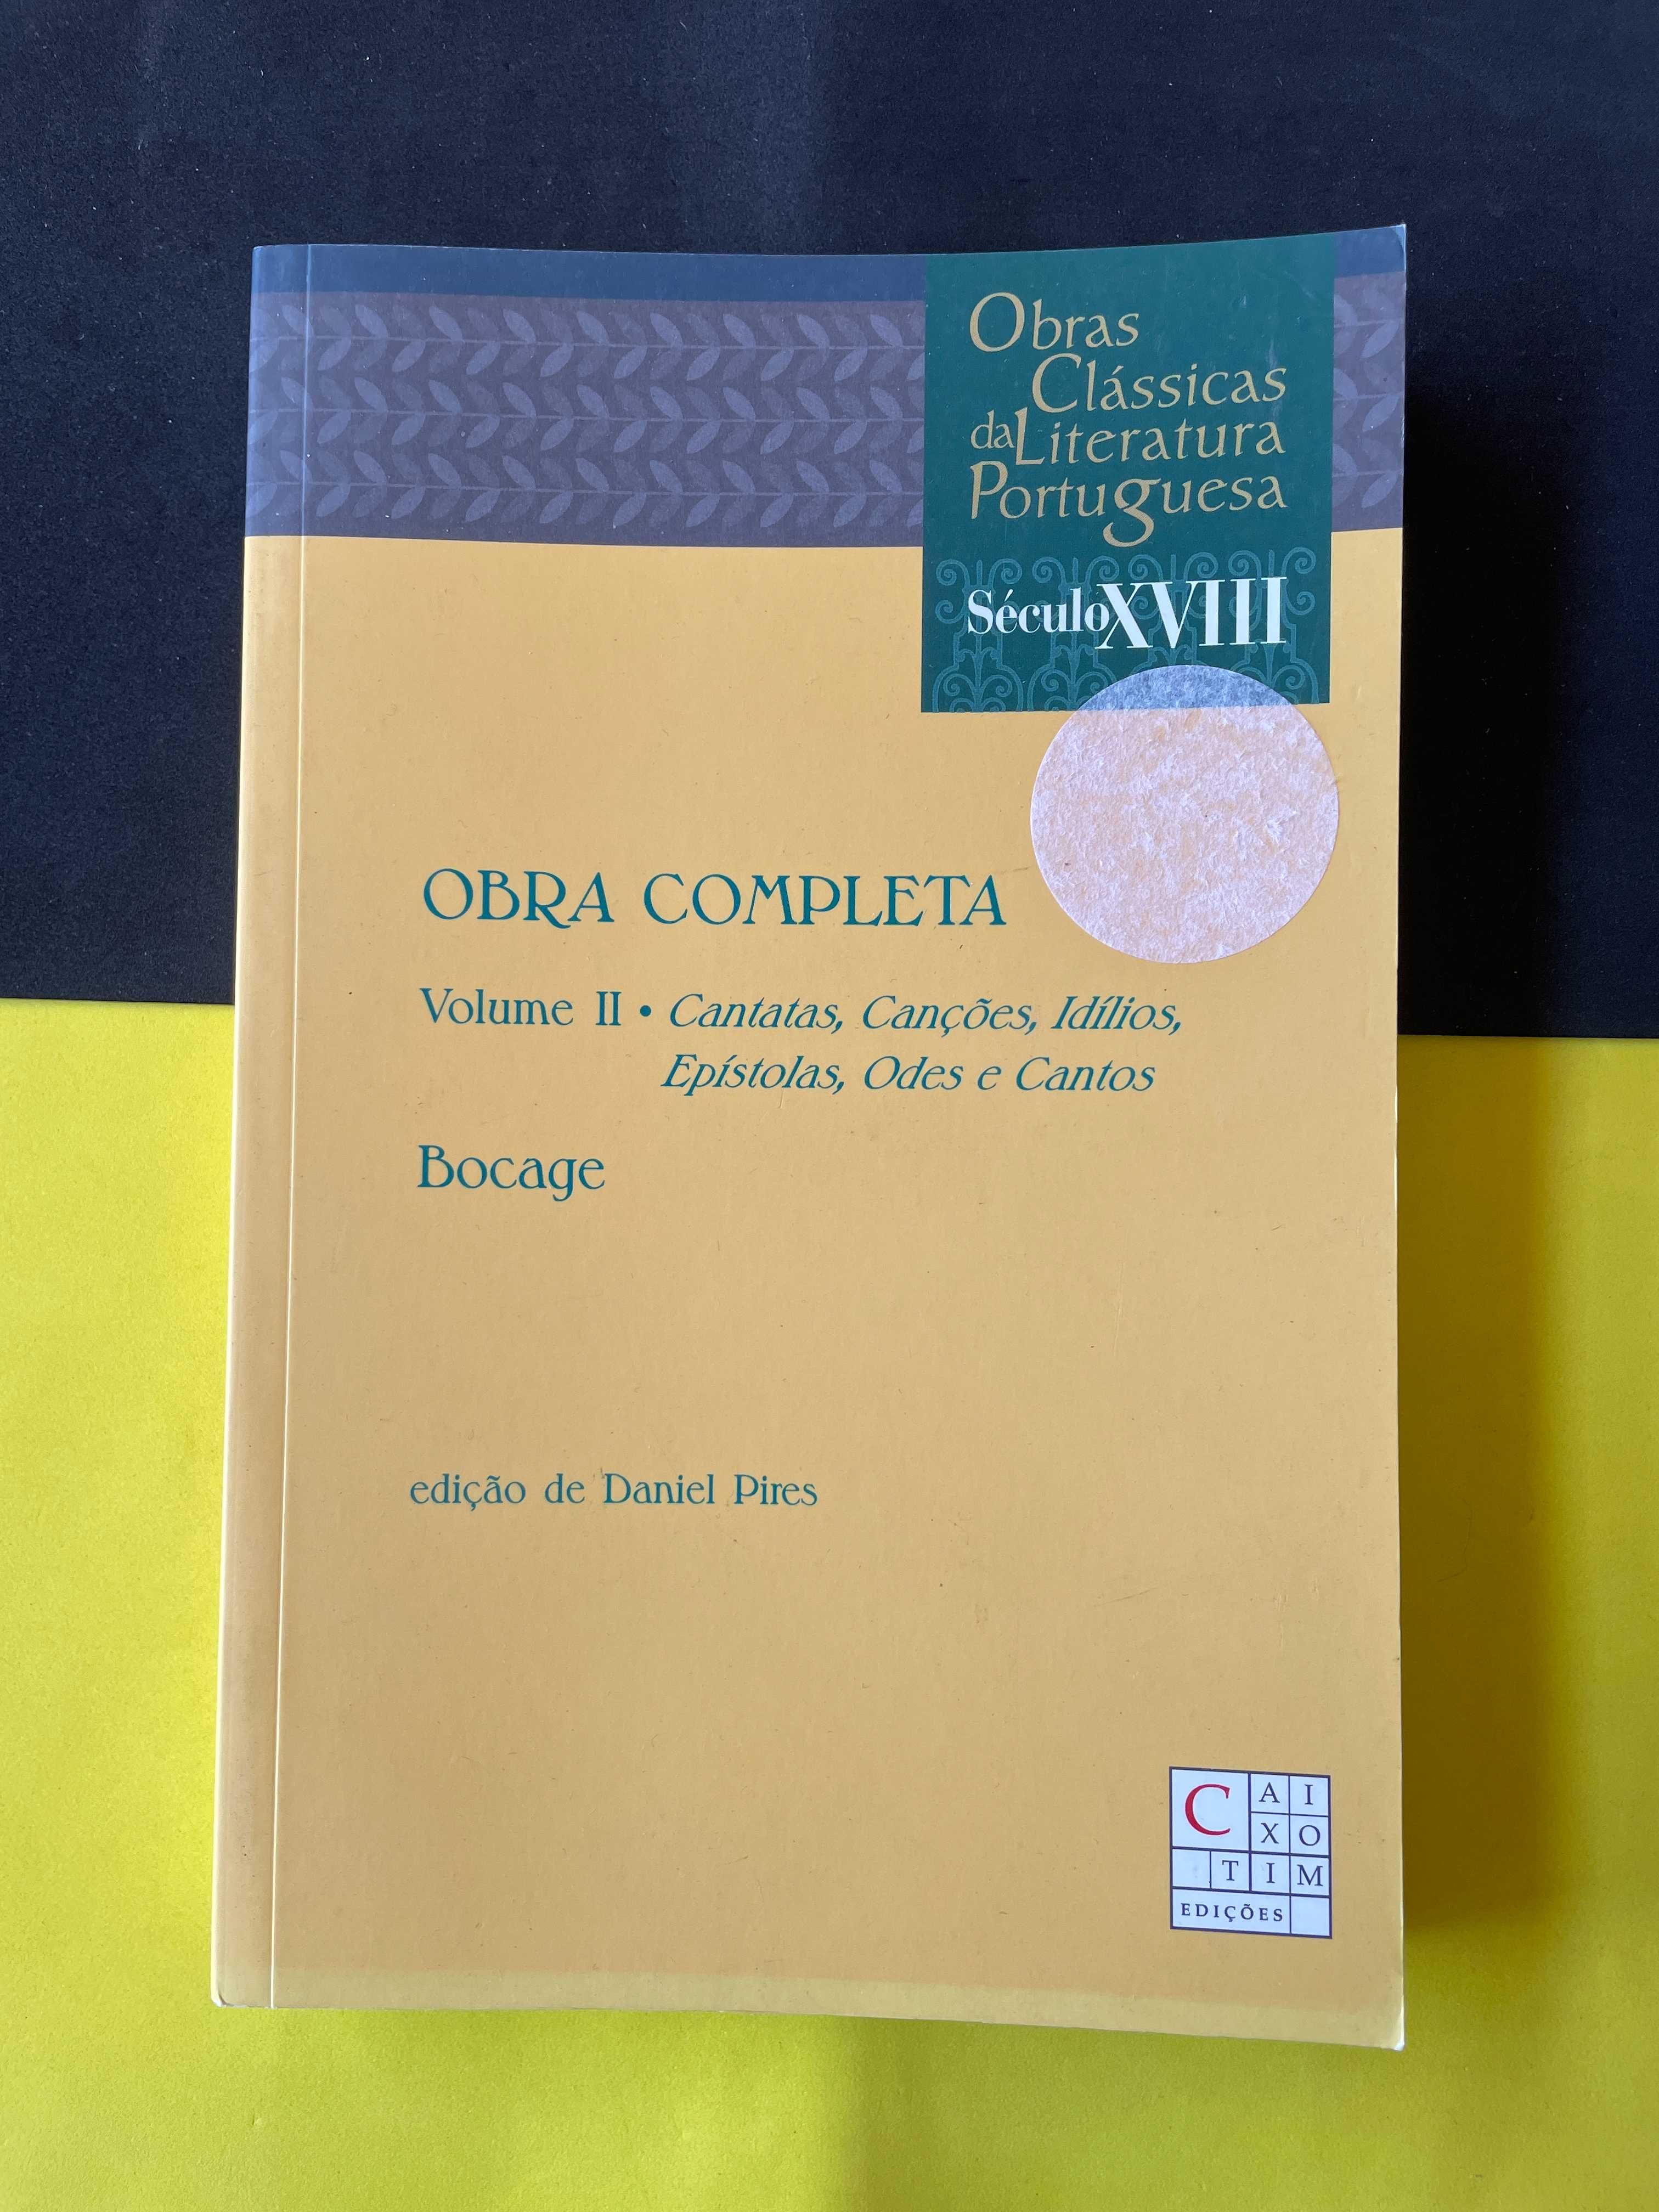 Bocage - Obra Completa Volume II - Cantatas, Canções, Idílios, Odes...